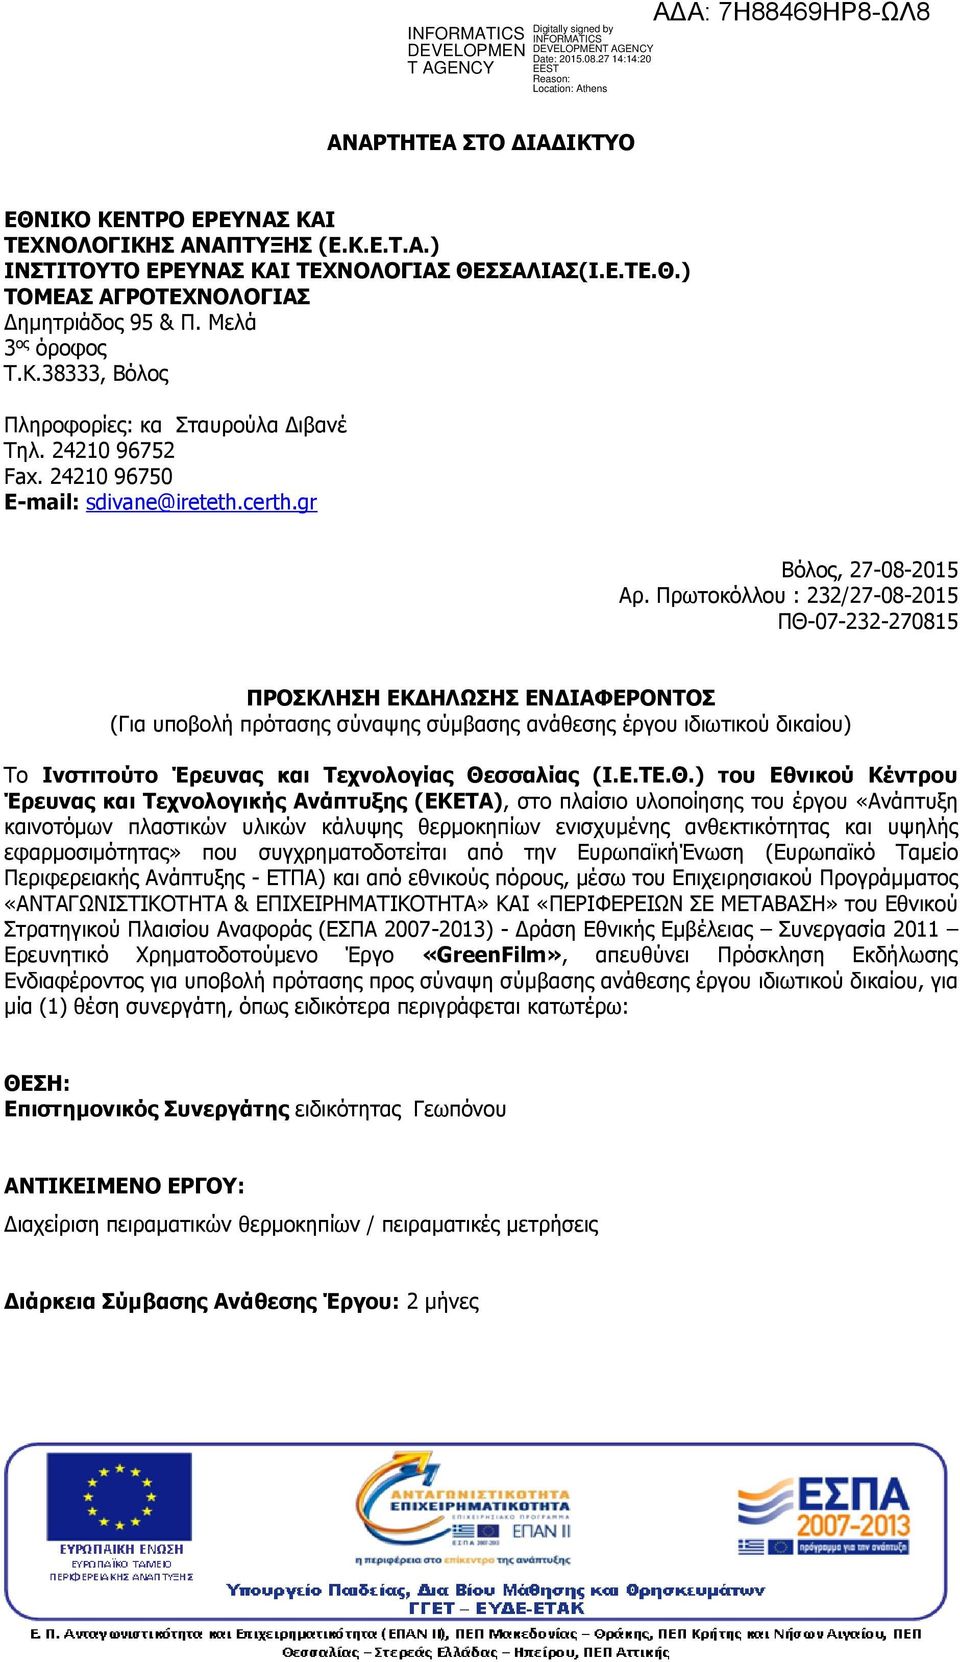 Πρωτοκόλλου : 232/27-08-2015 ΠΘ-07-232-270815 ΠΡΟΣΚΛΗΣΗ ΕΚΔΗΛΩΣΗΣ ΕΝΔΙΑΦΕΡΟΝΤΟΣ (Για υποβολή πρότασης σύναψης σύμβασης ανάθεσης έργου ιδιωτικού δικαίου) Το Ινστιτούτο Έρευνας και Τεχνολογίας